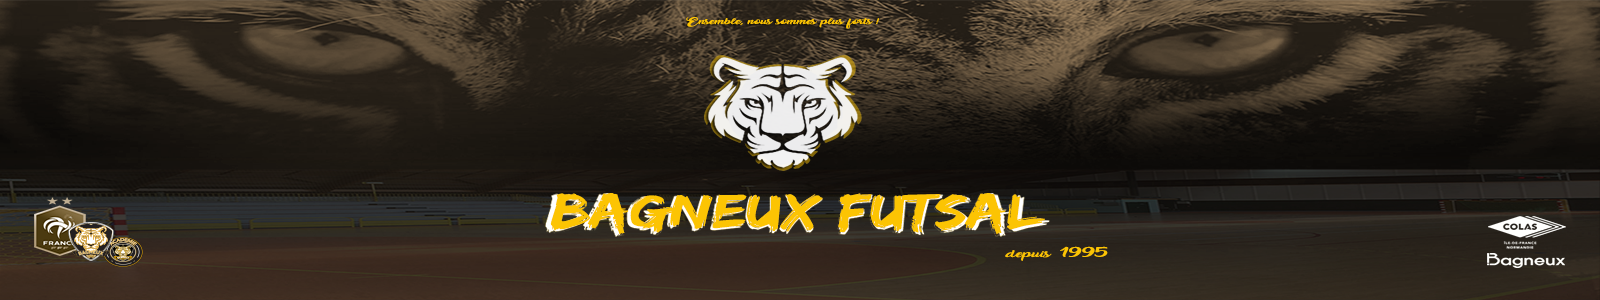 BAGNEUX FUTSAL : site officiel du club de foot de BAGNEUX - footeo